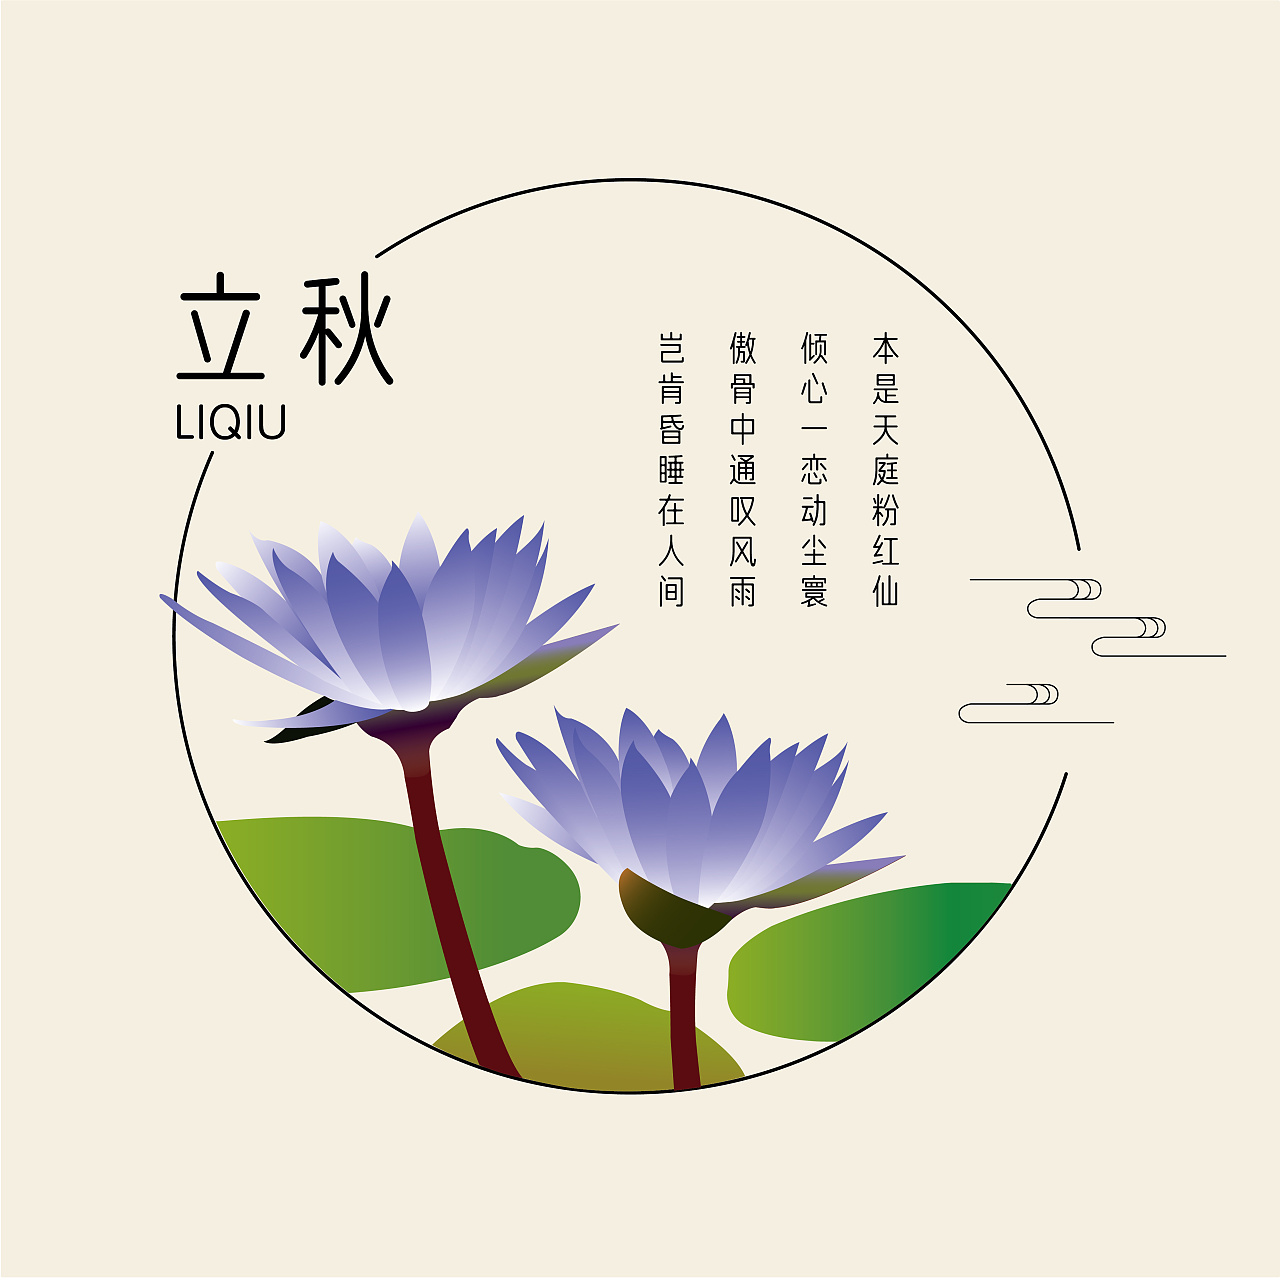 中国传统水墨画二十四节气|Illustration|Commercial illustration|Laohuhuahua1989 ...